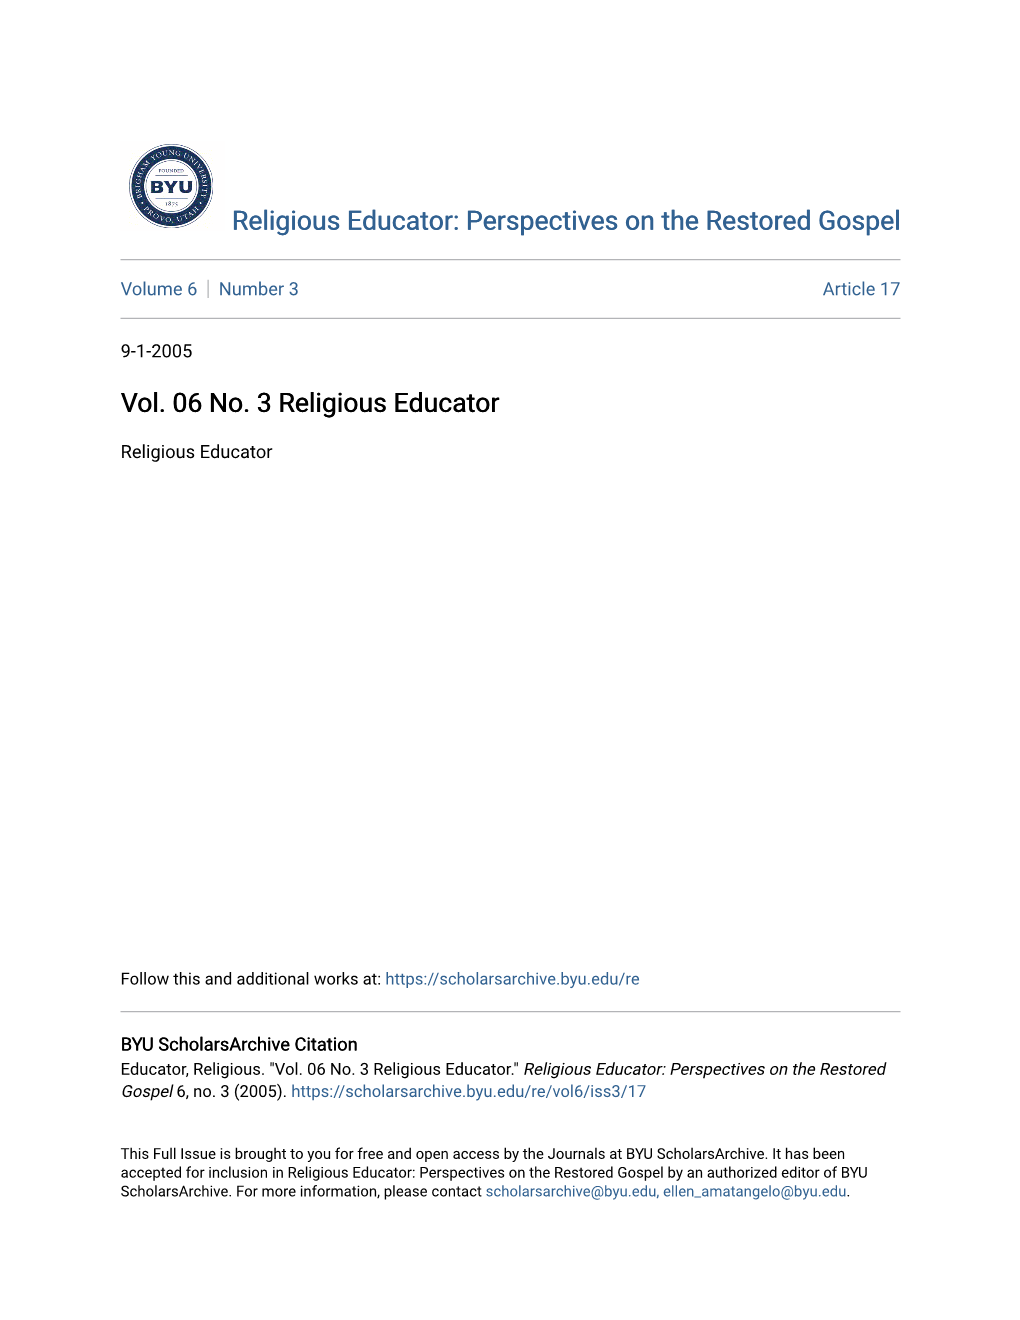 Vol. 06 No. 3 Religious Educator